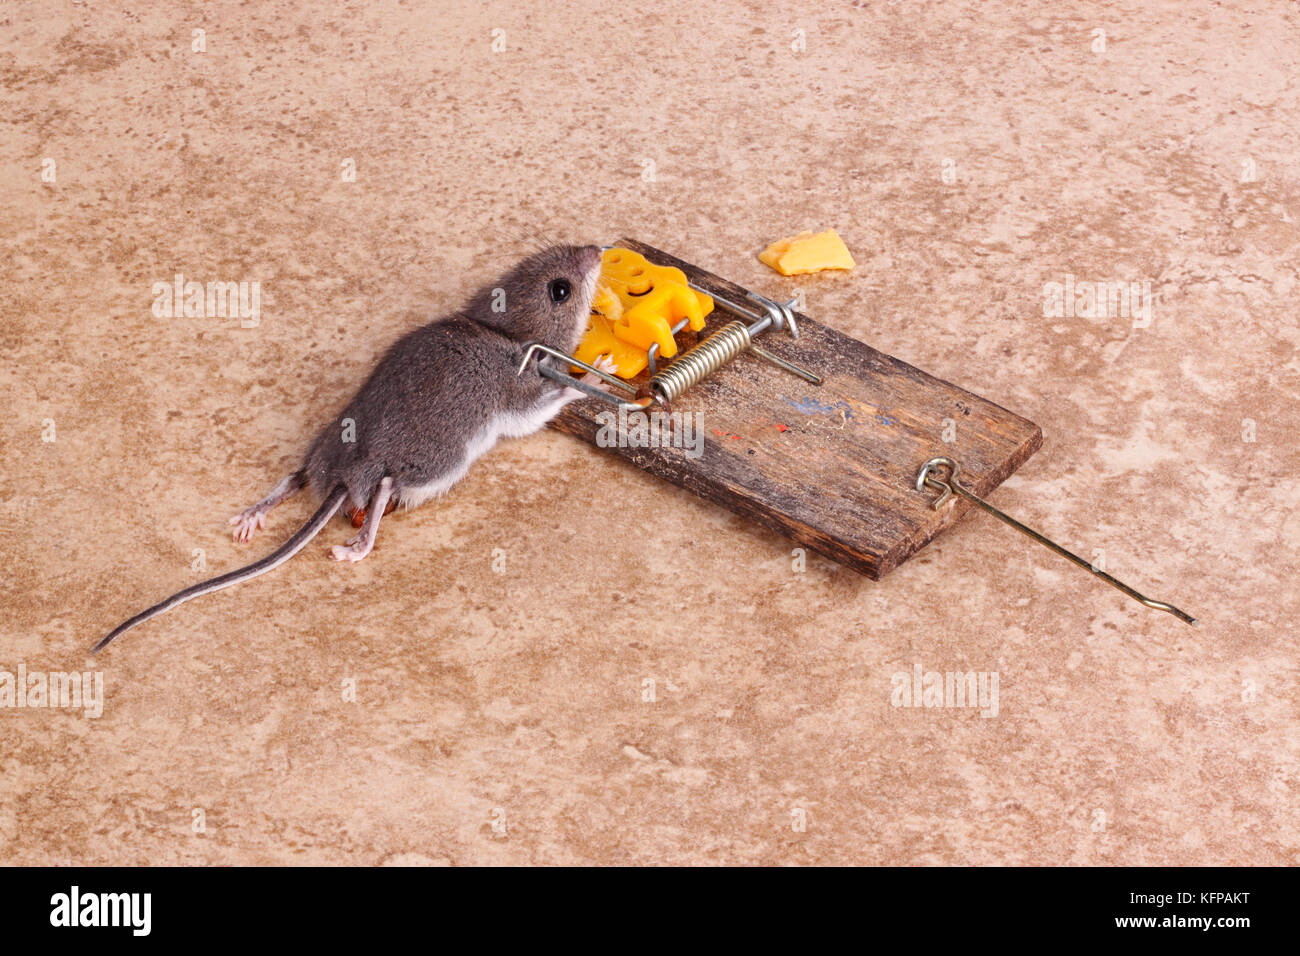 Maison commune de la souris (Mus musculus) tué dans un bar à ressort le piégeage sur un plancher de tuiles background Banque D'Images